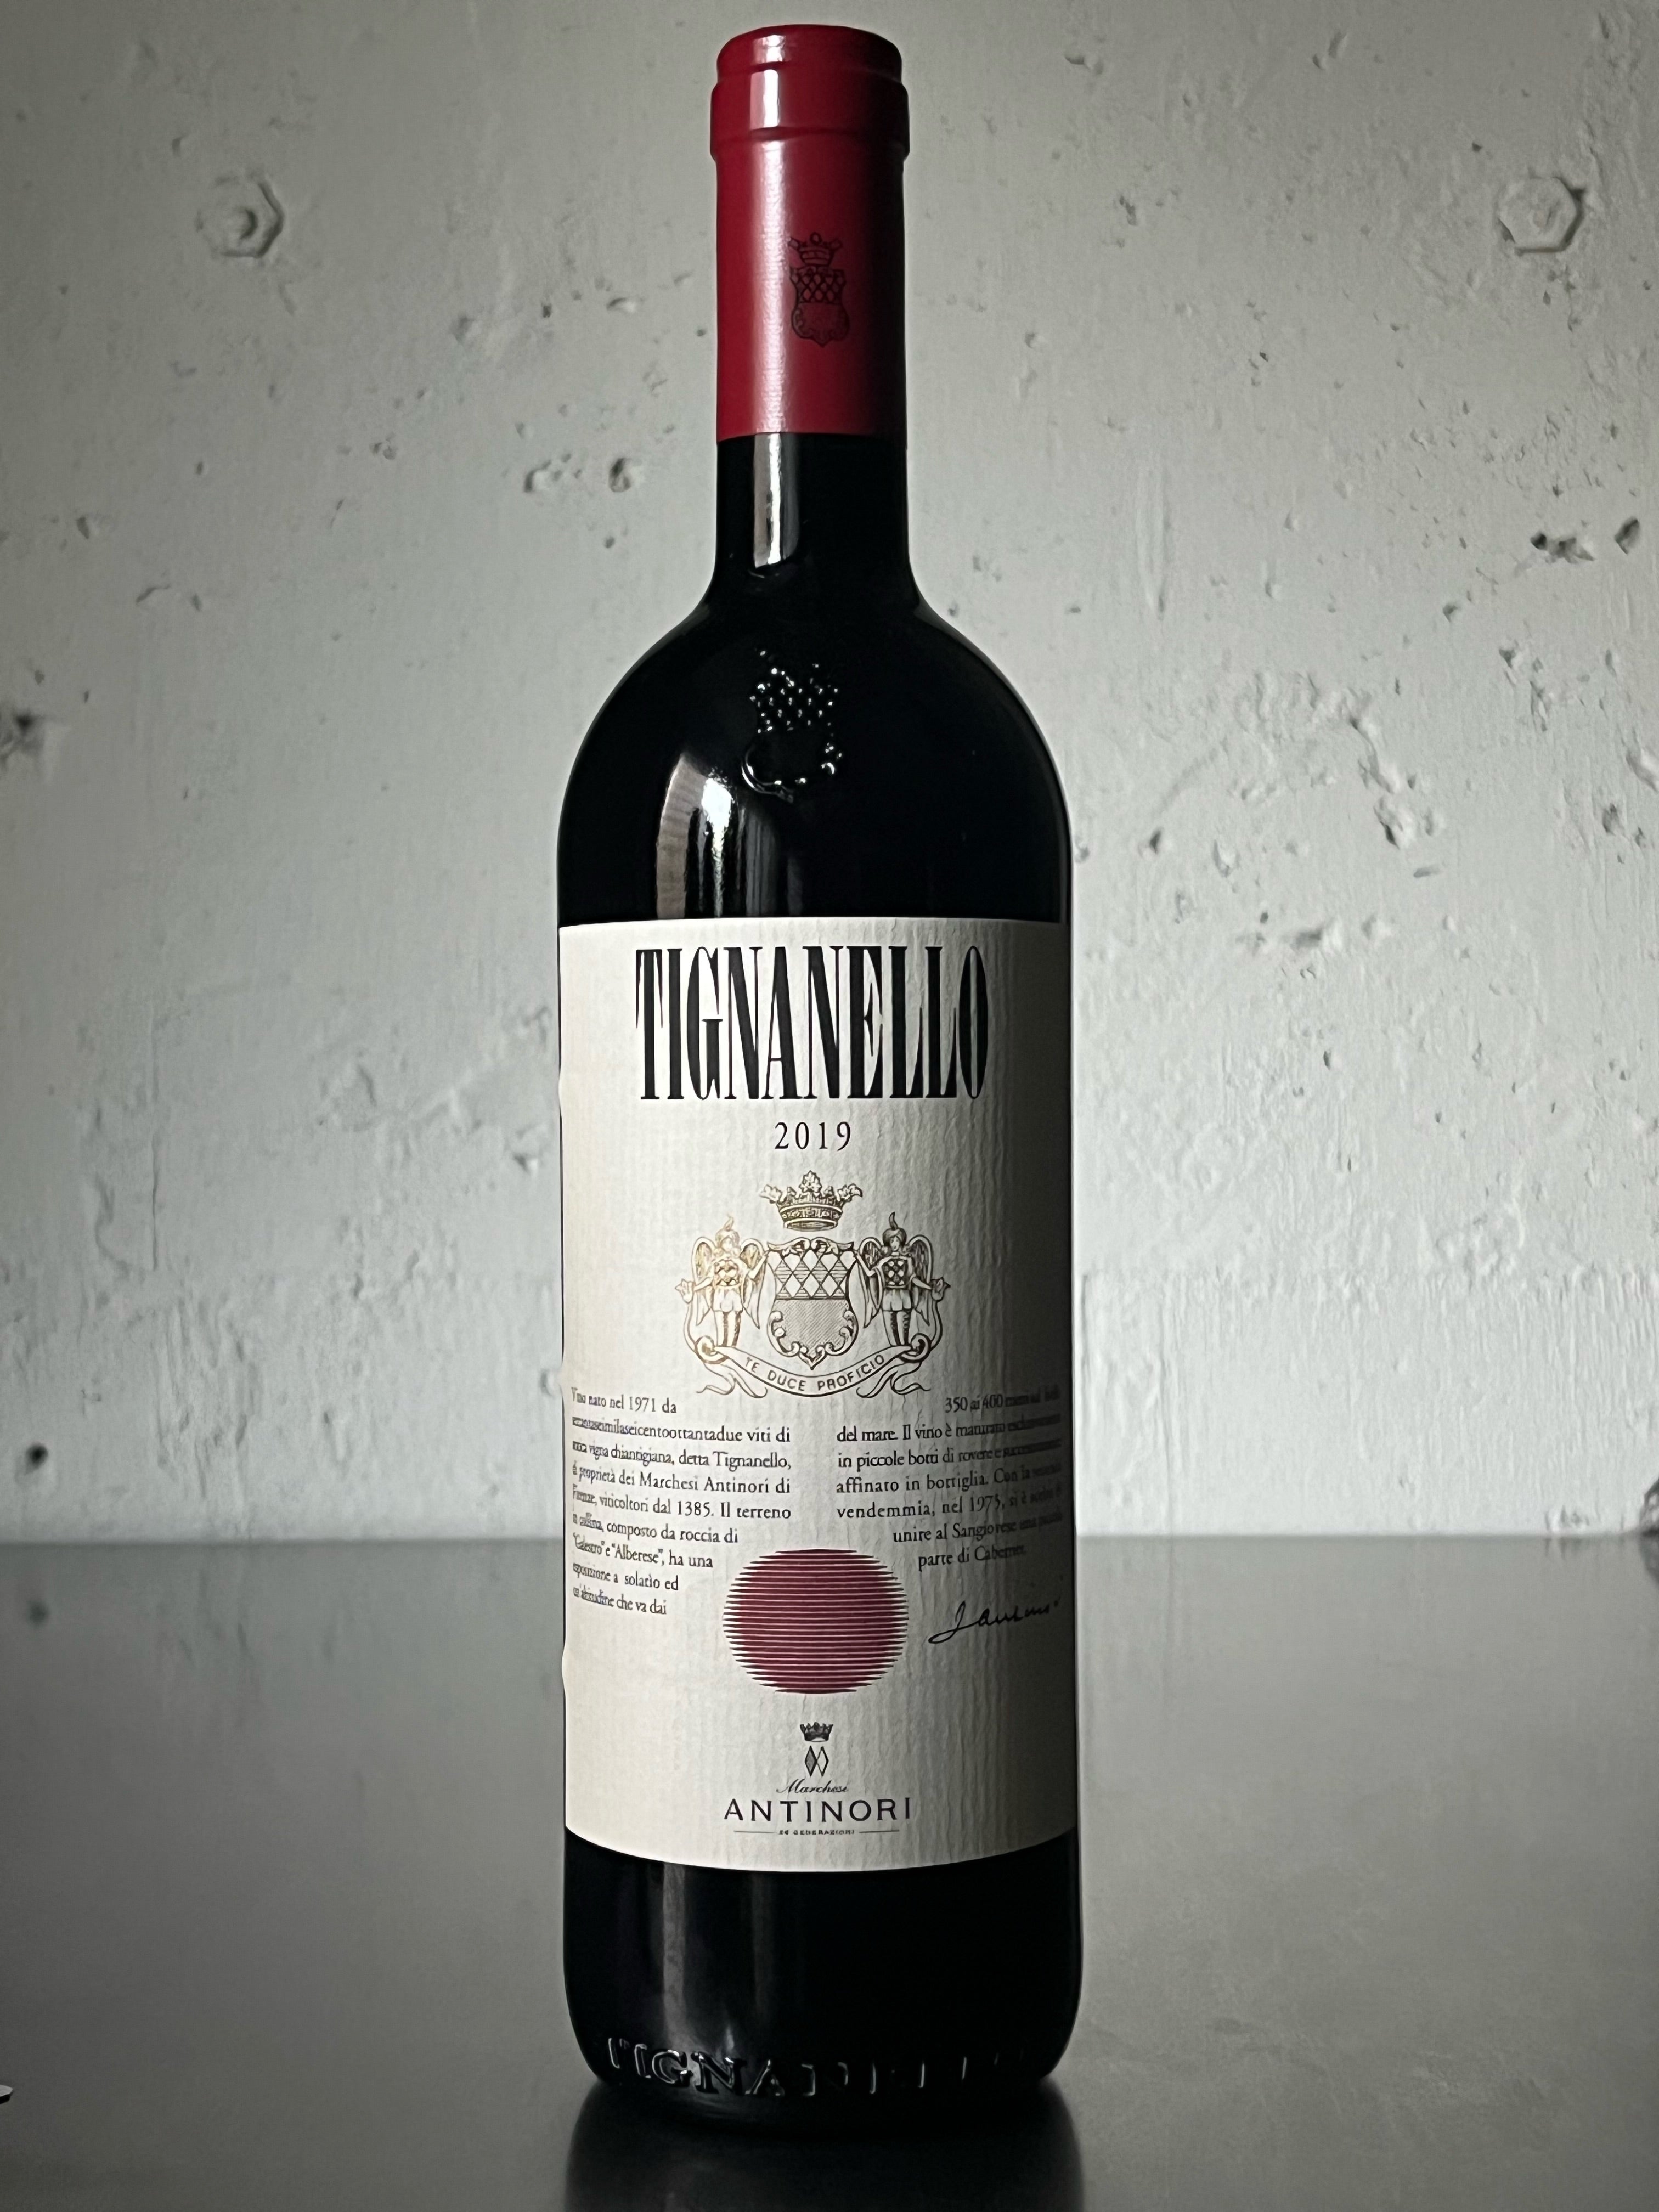 ＊生産地イタリアトスカーナ地方ティニャネロ2003 アンティノリ赤ワインAntinori Tignanello